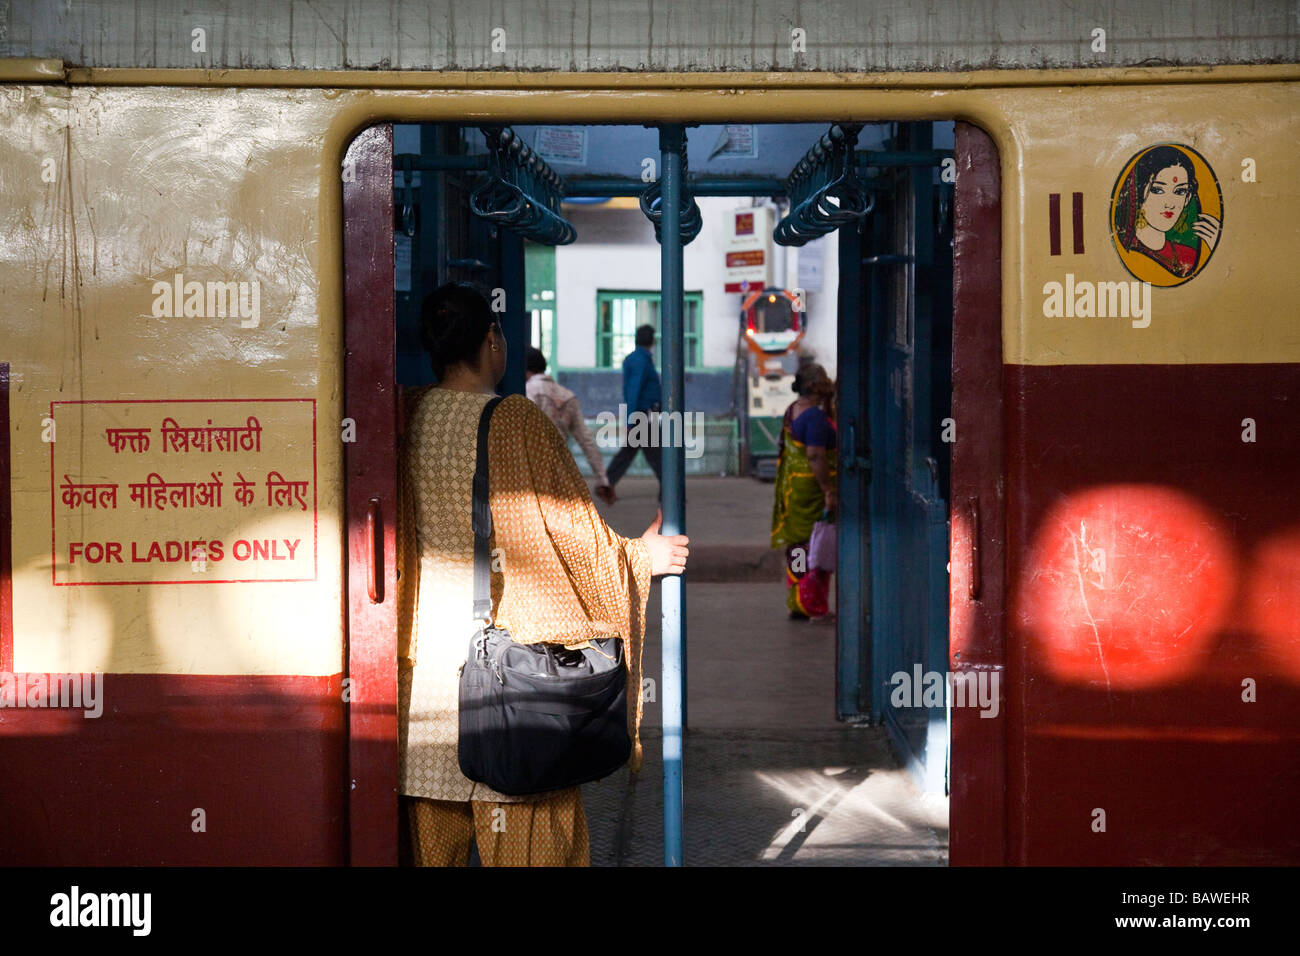 Mesdames seule voiture sur un train à Victoria Terminus à Mumbai Inde Banque D'Images